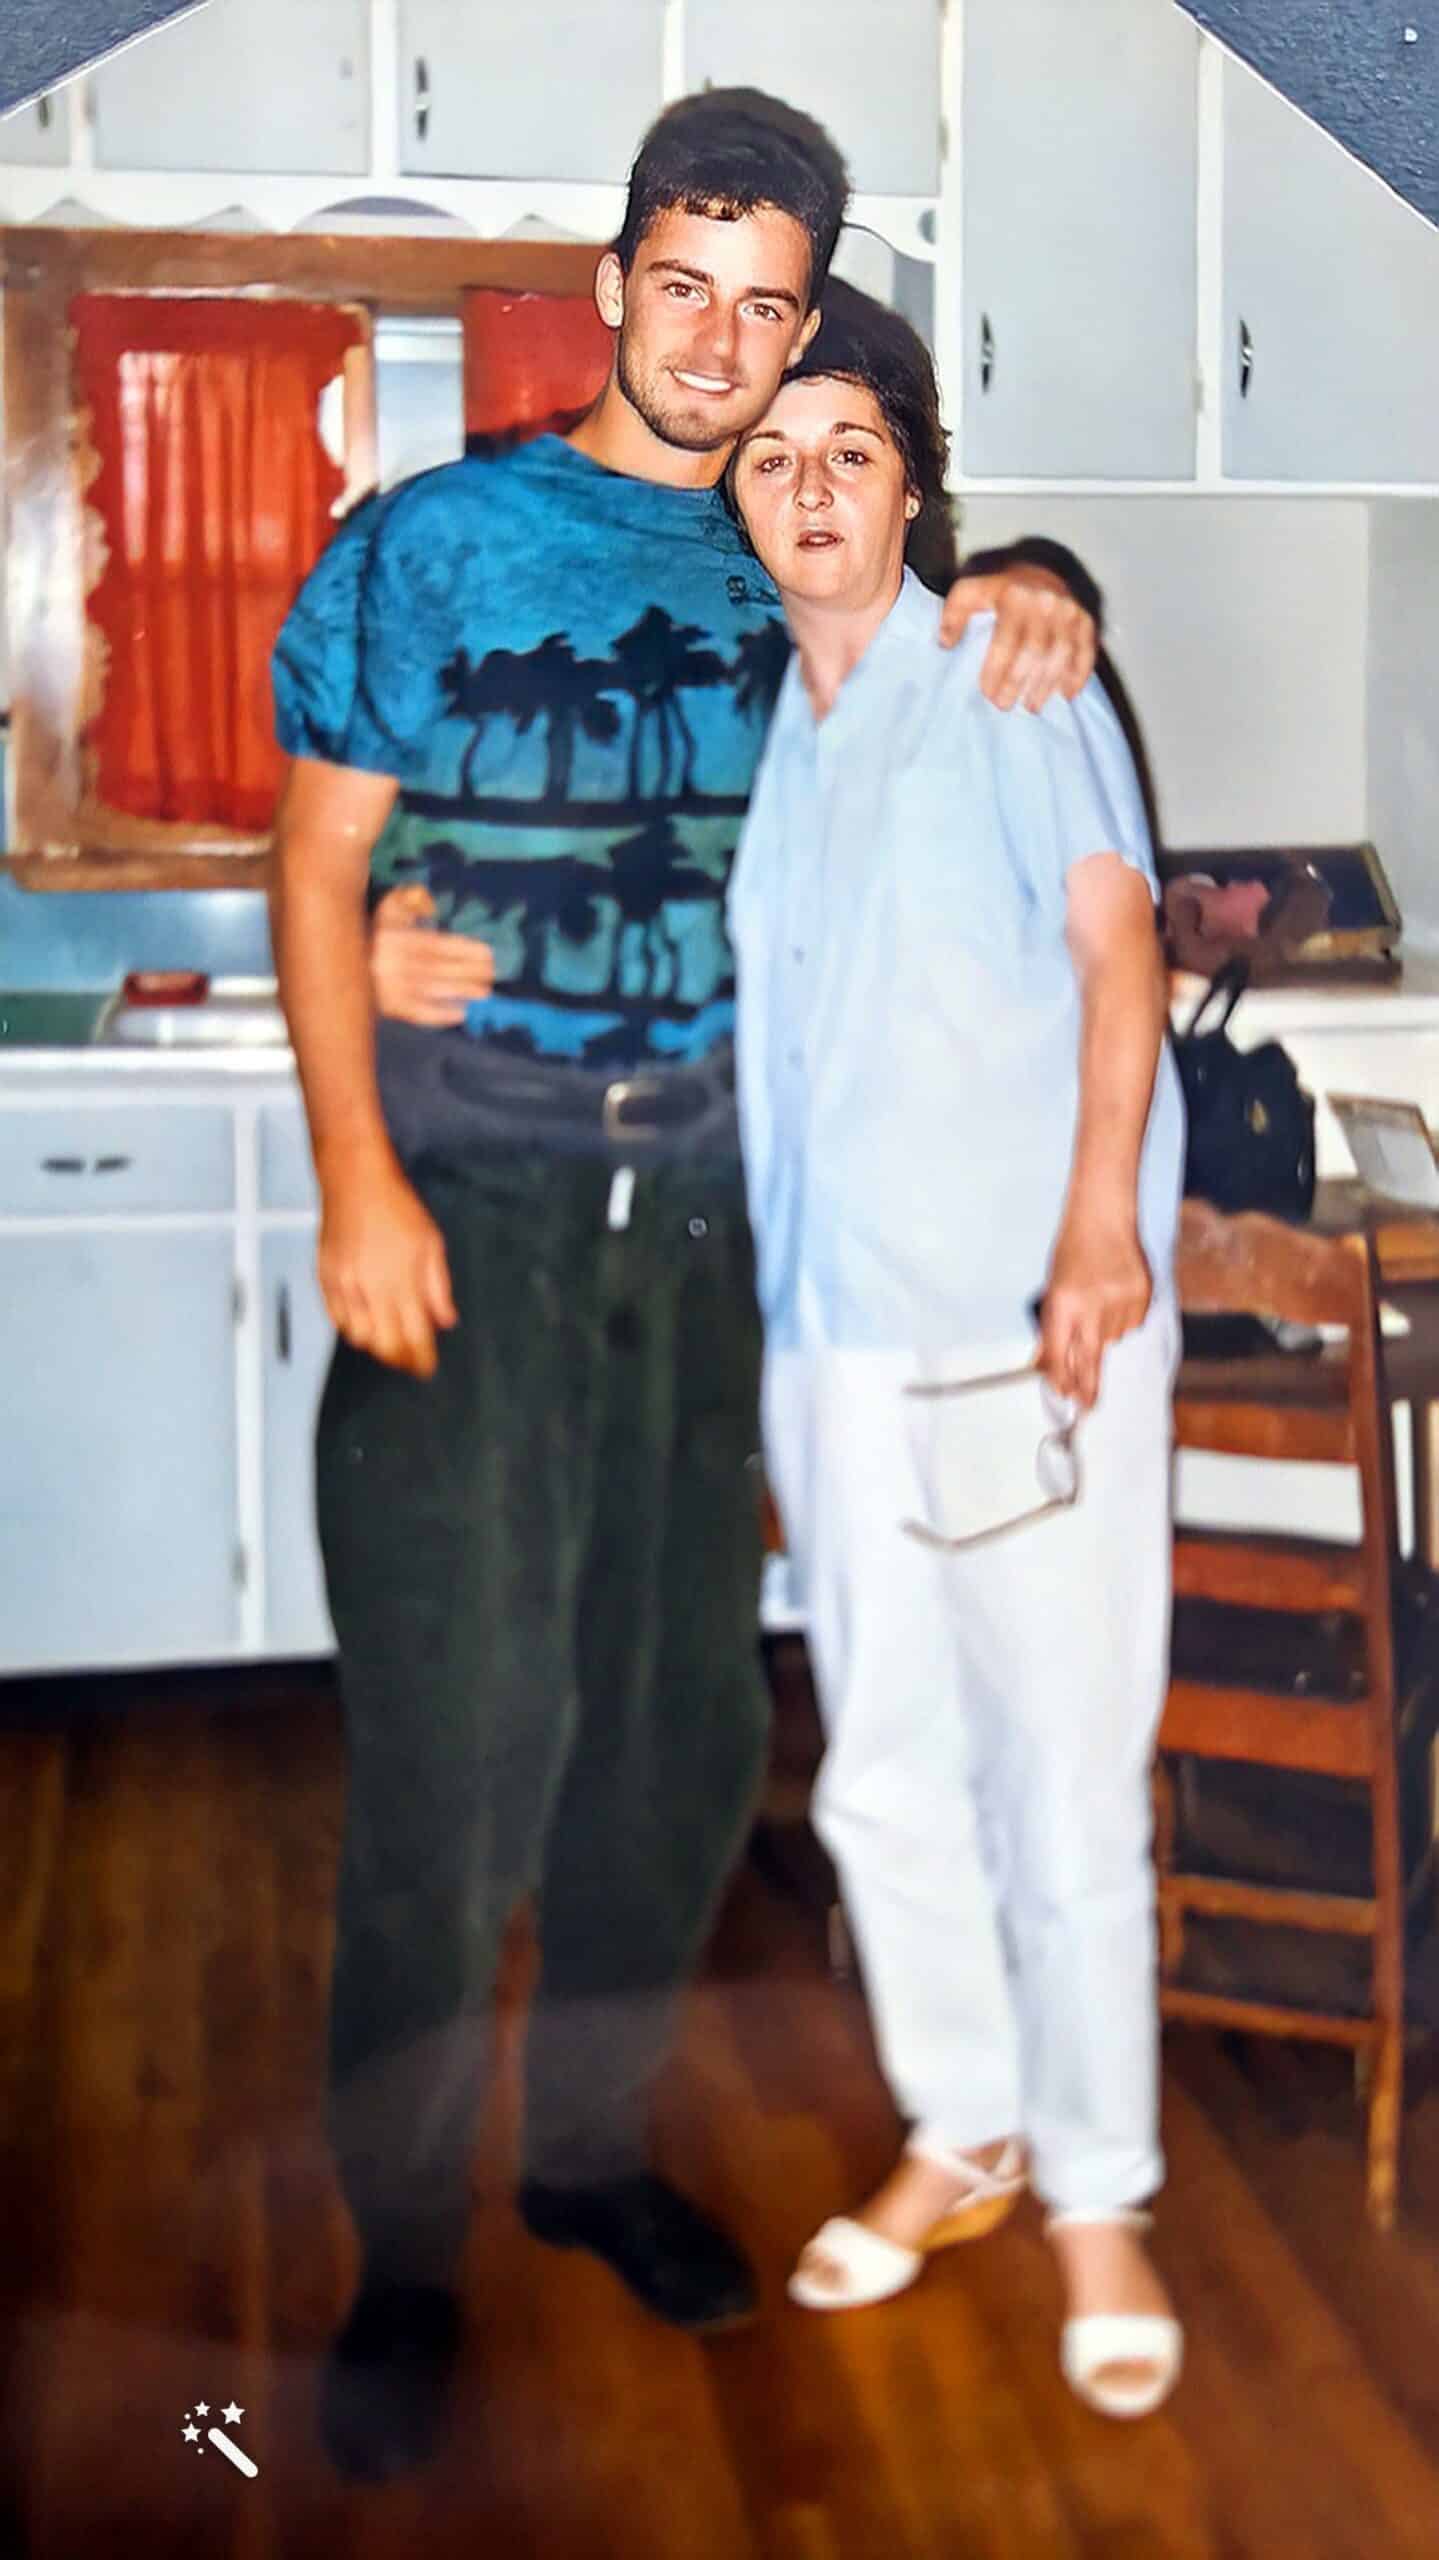 Carl und Viola, seine leibliche Mutter. Foto verbessert und Farben restauriert mit MyHeritage.